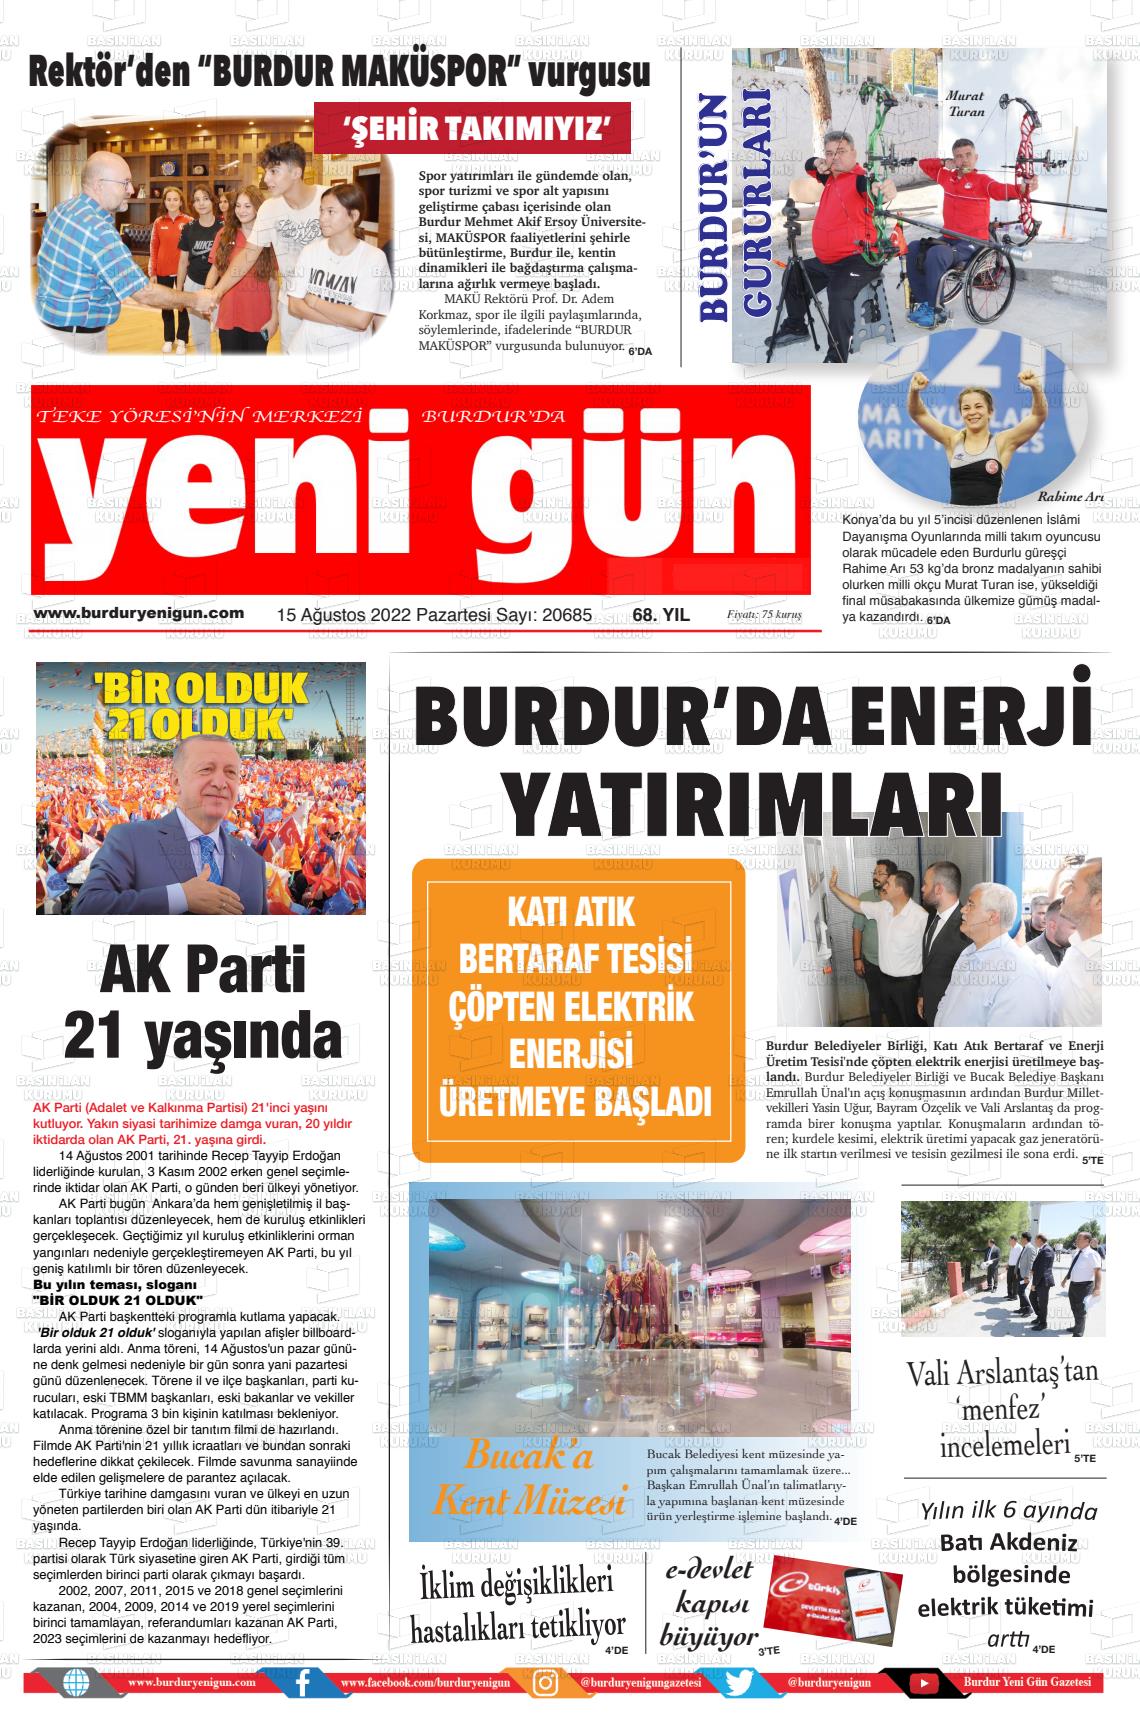 15 Ağustos 2022 Burdur Yeni Gün Gazete Manşeti